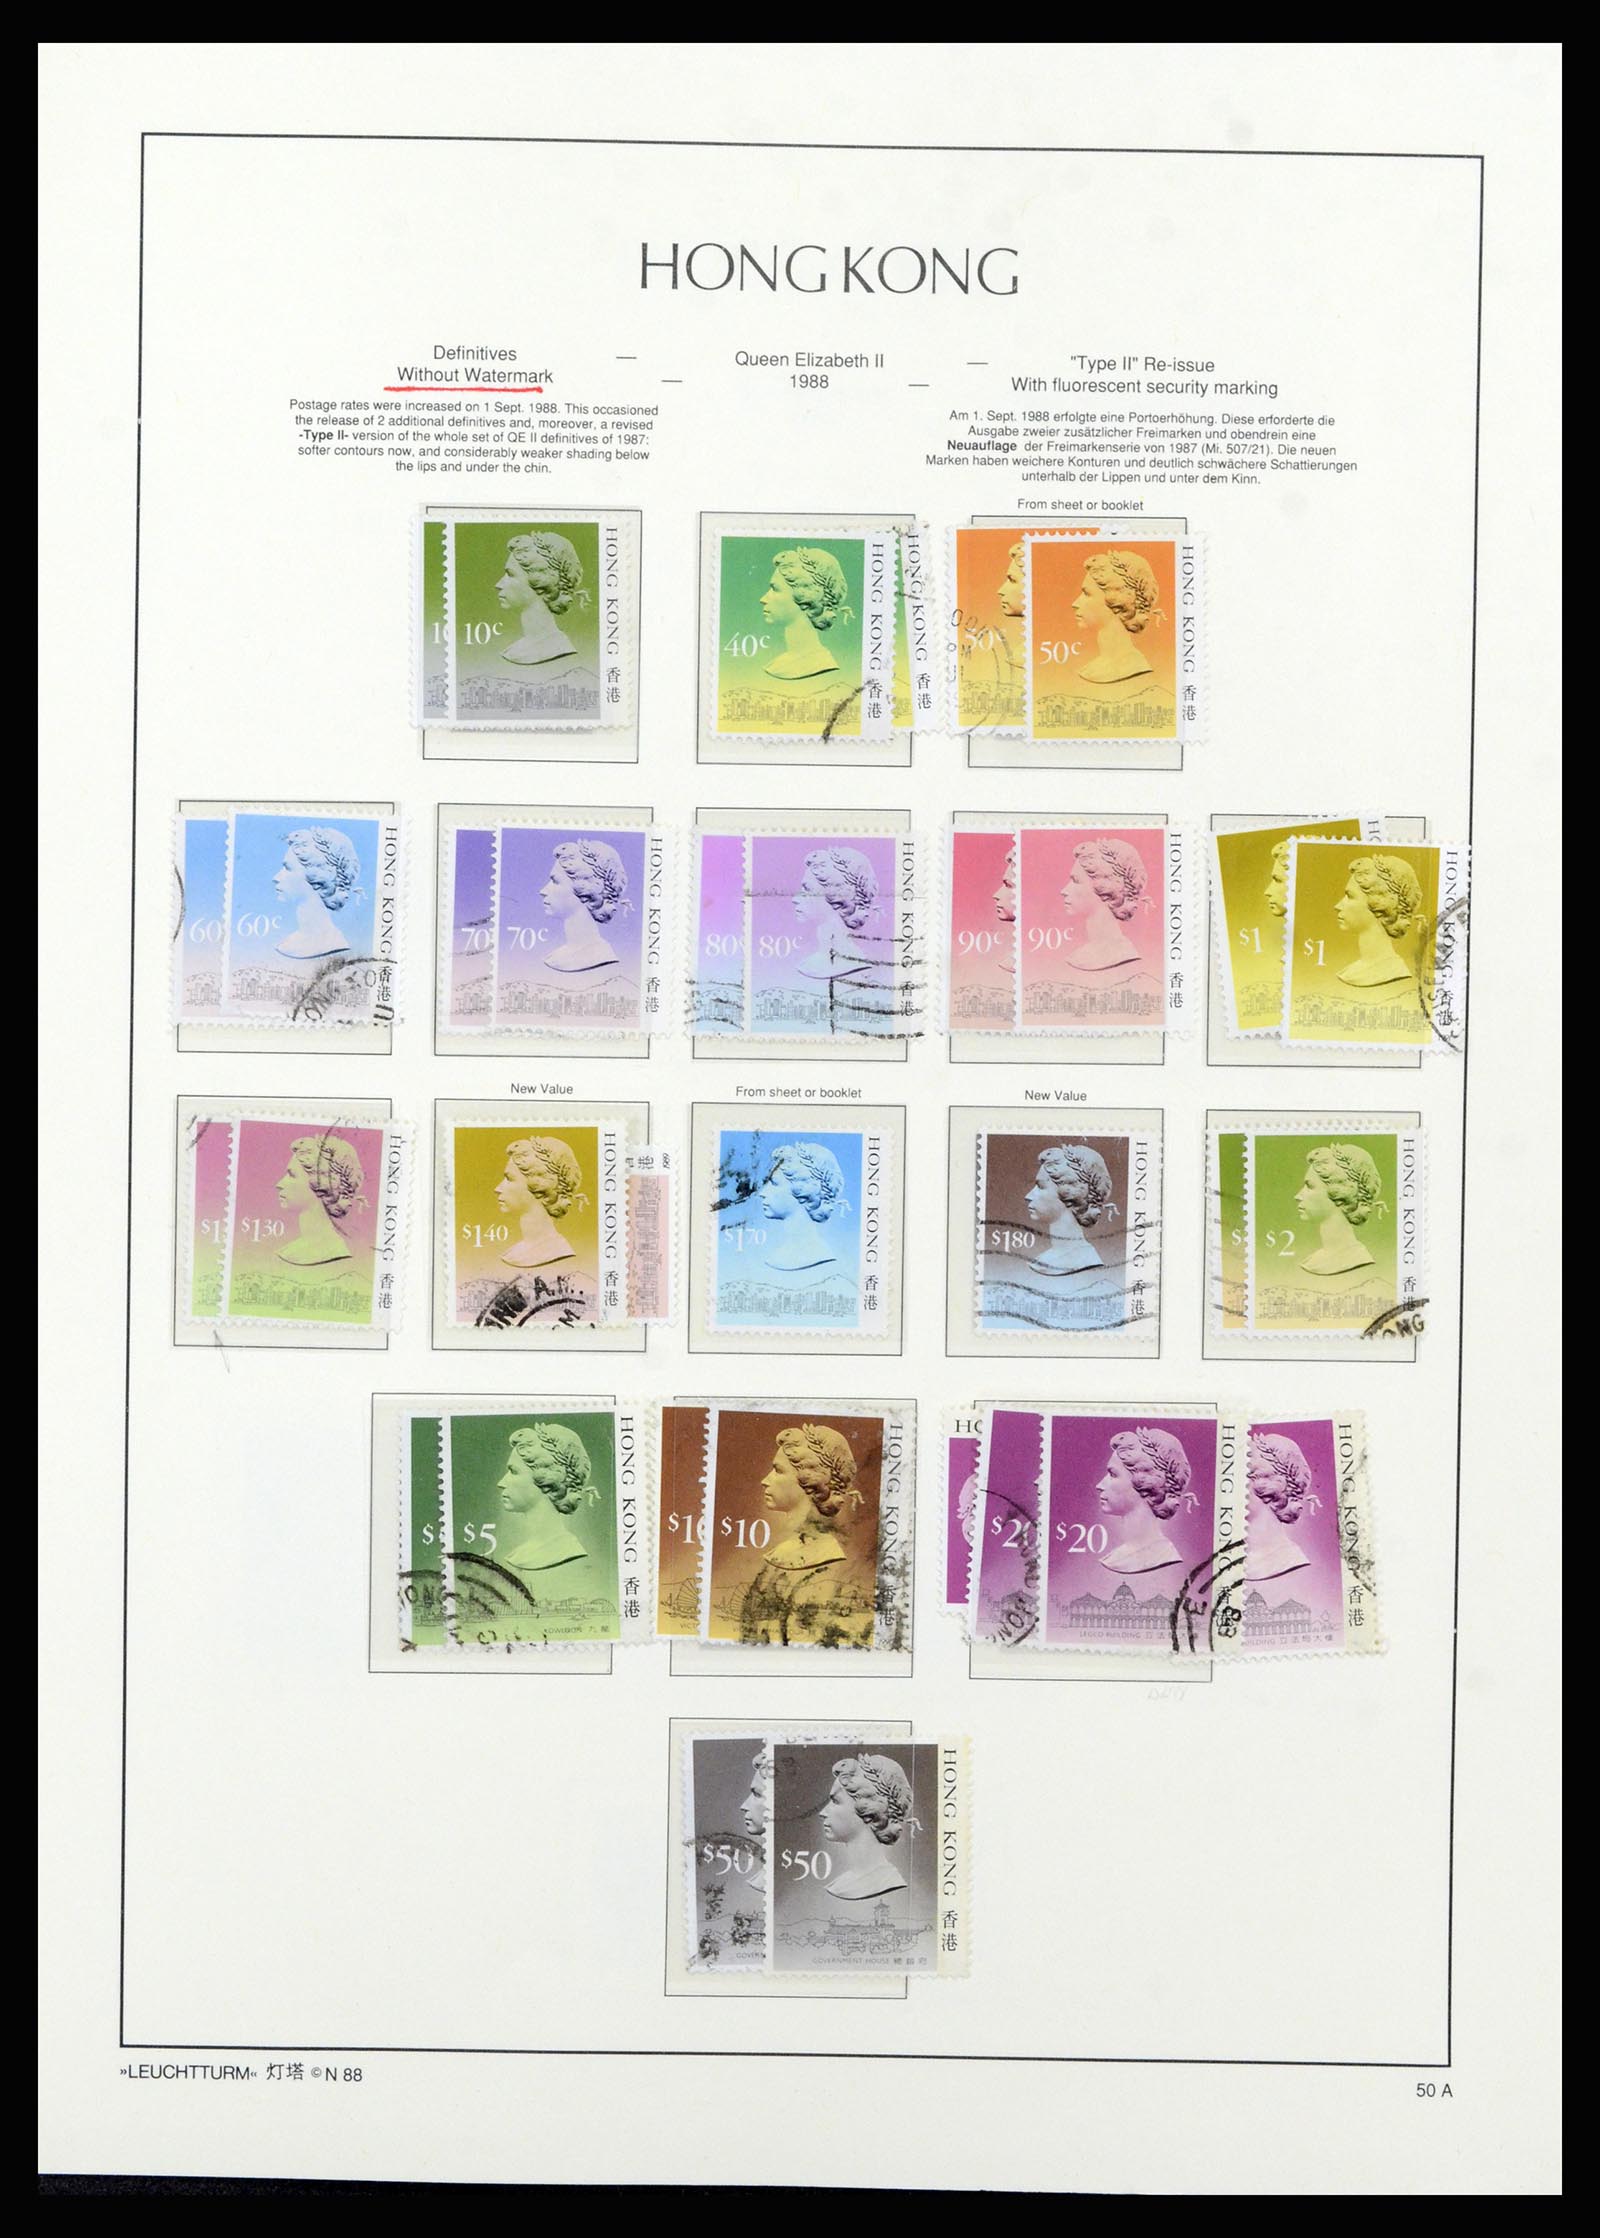 37070 056 - Stamp collection 37070 Hong Kong 1862-1996.